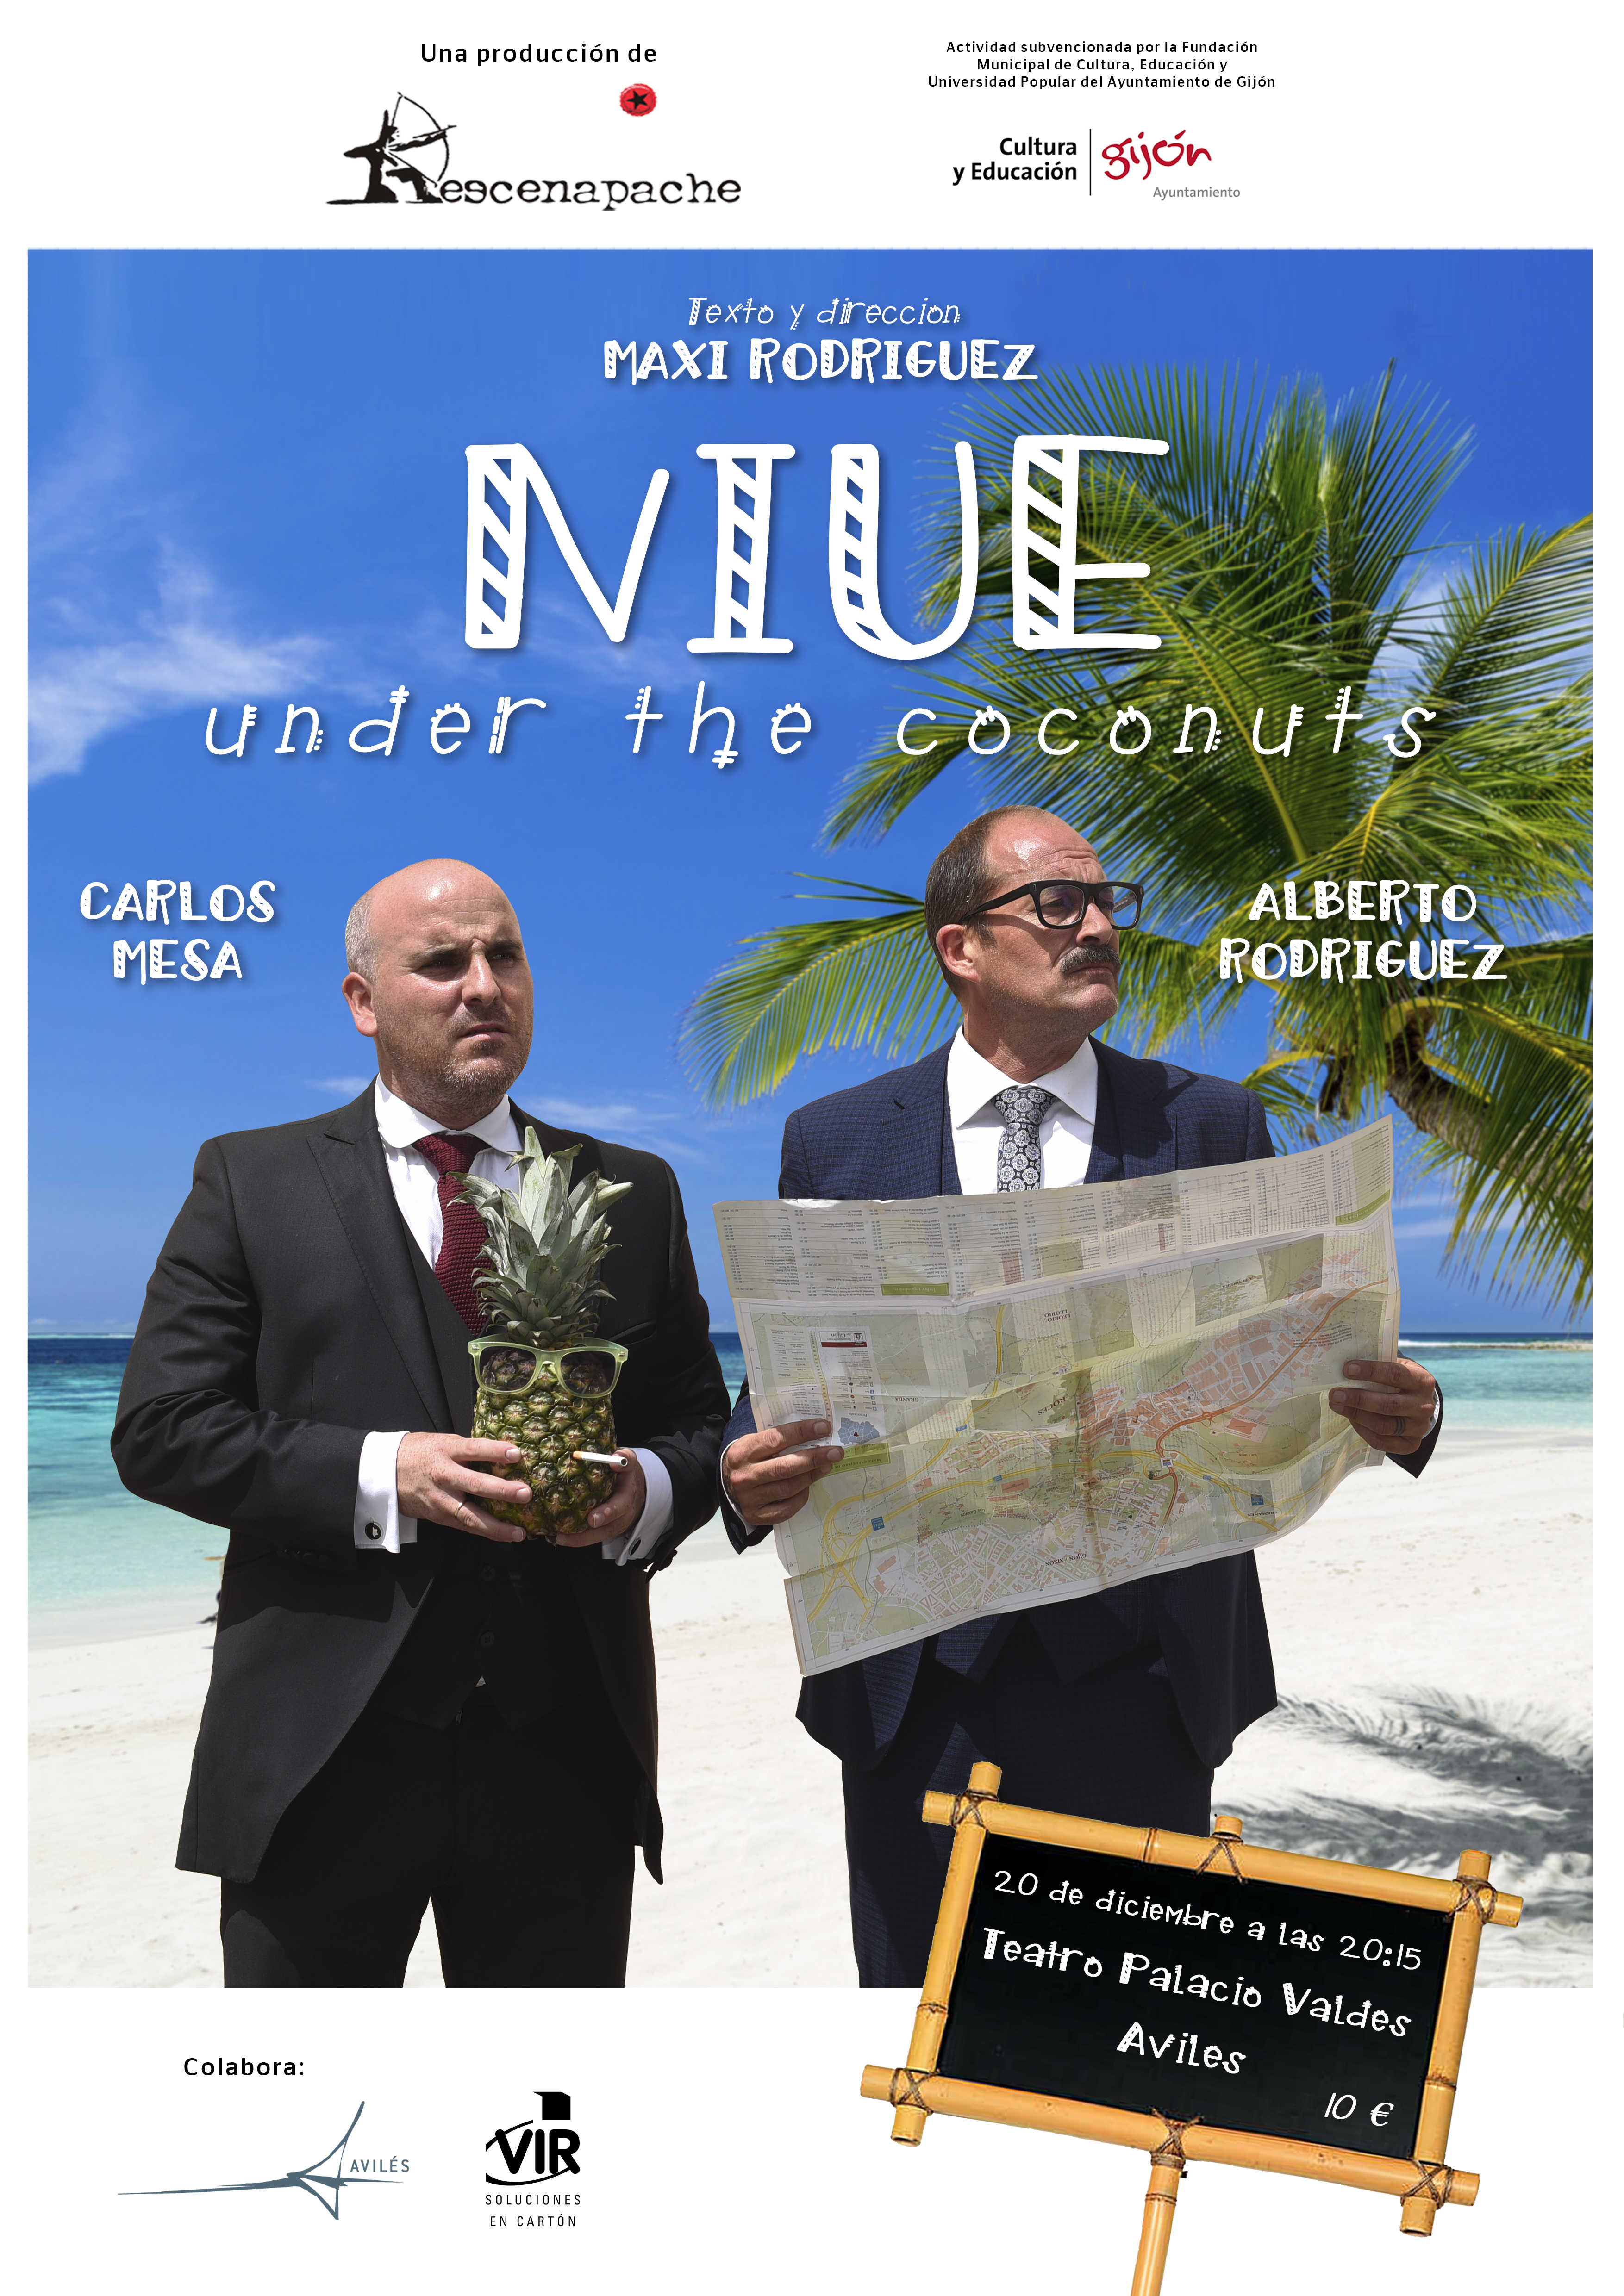 #LosEstrenosDelPalacioValdés ofrece el humor de Maxi Rodríguez con 'Niue under the coconuts'